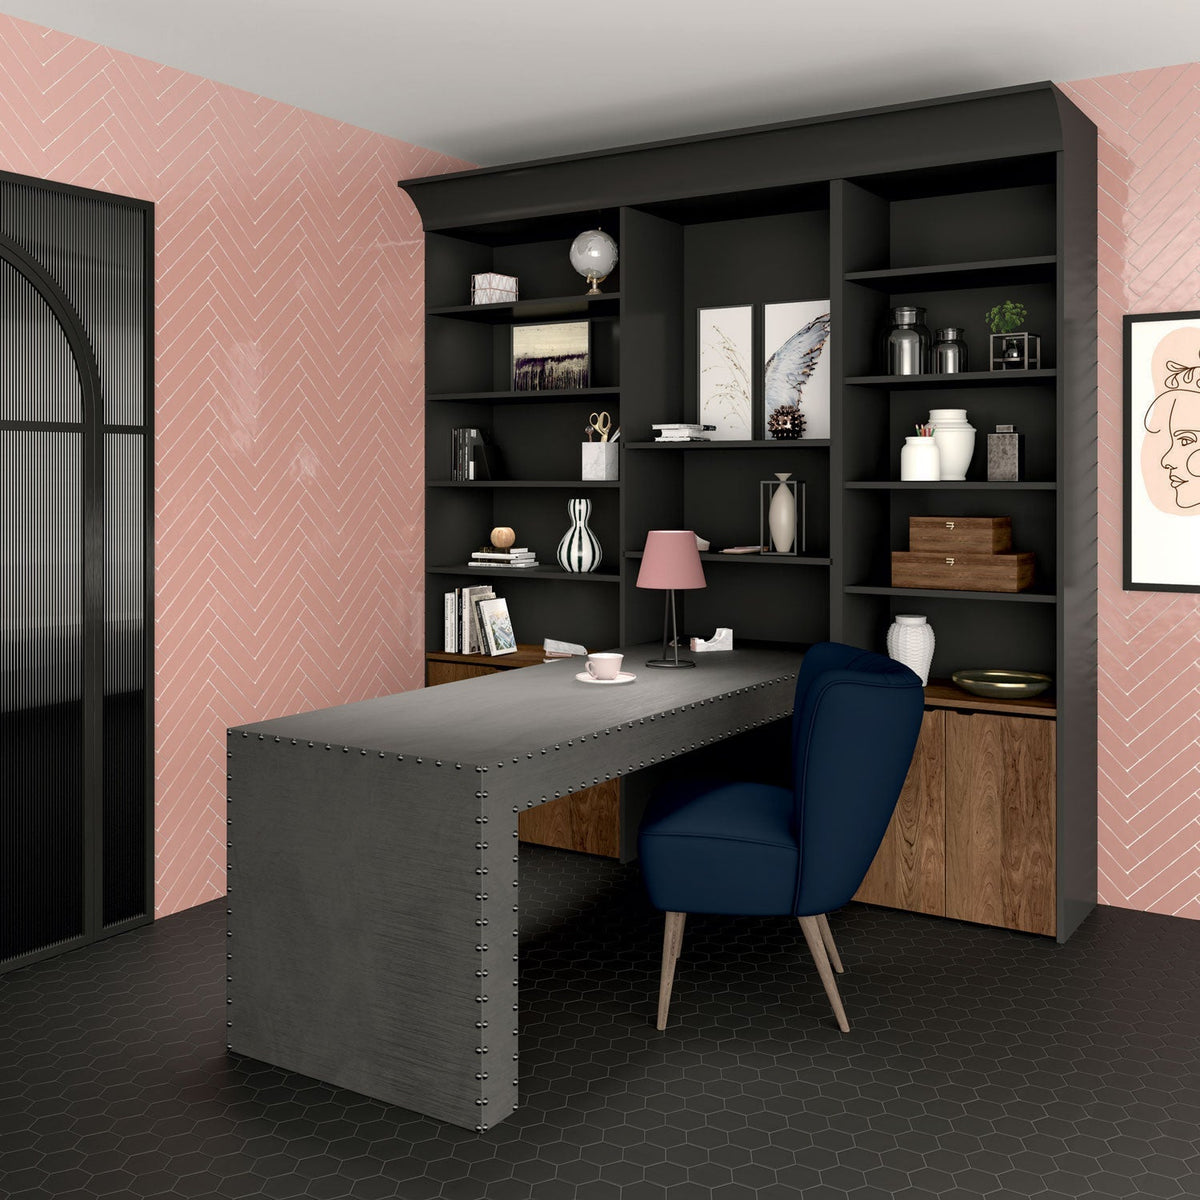 Marazzi - Artistic Reflections™ 2 in. x 10 in. Ceramic Tile - Rose Glossy Room Scene